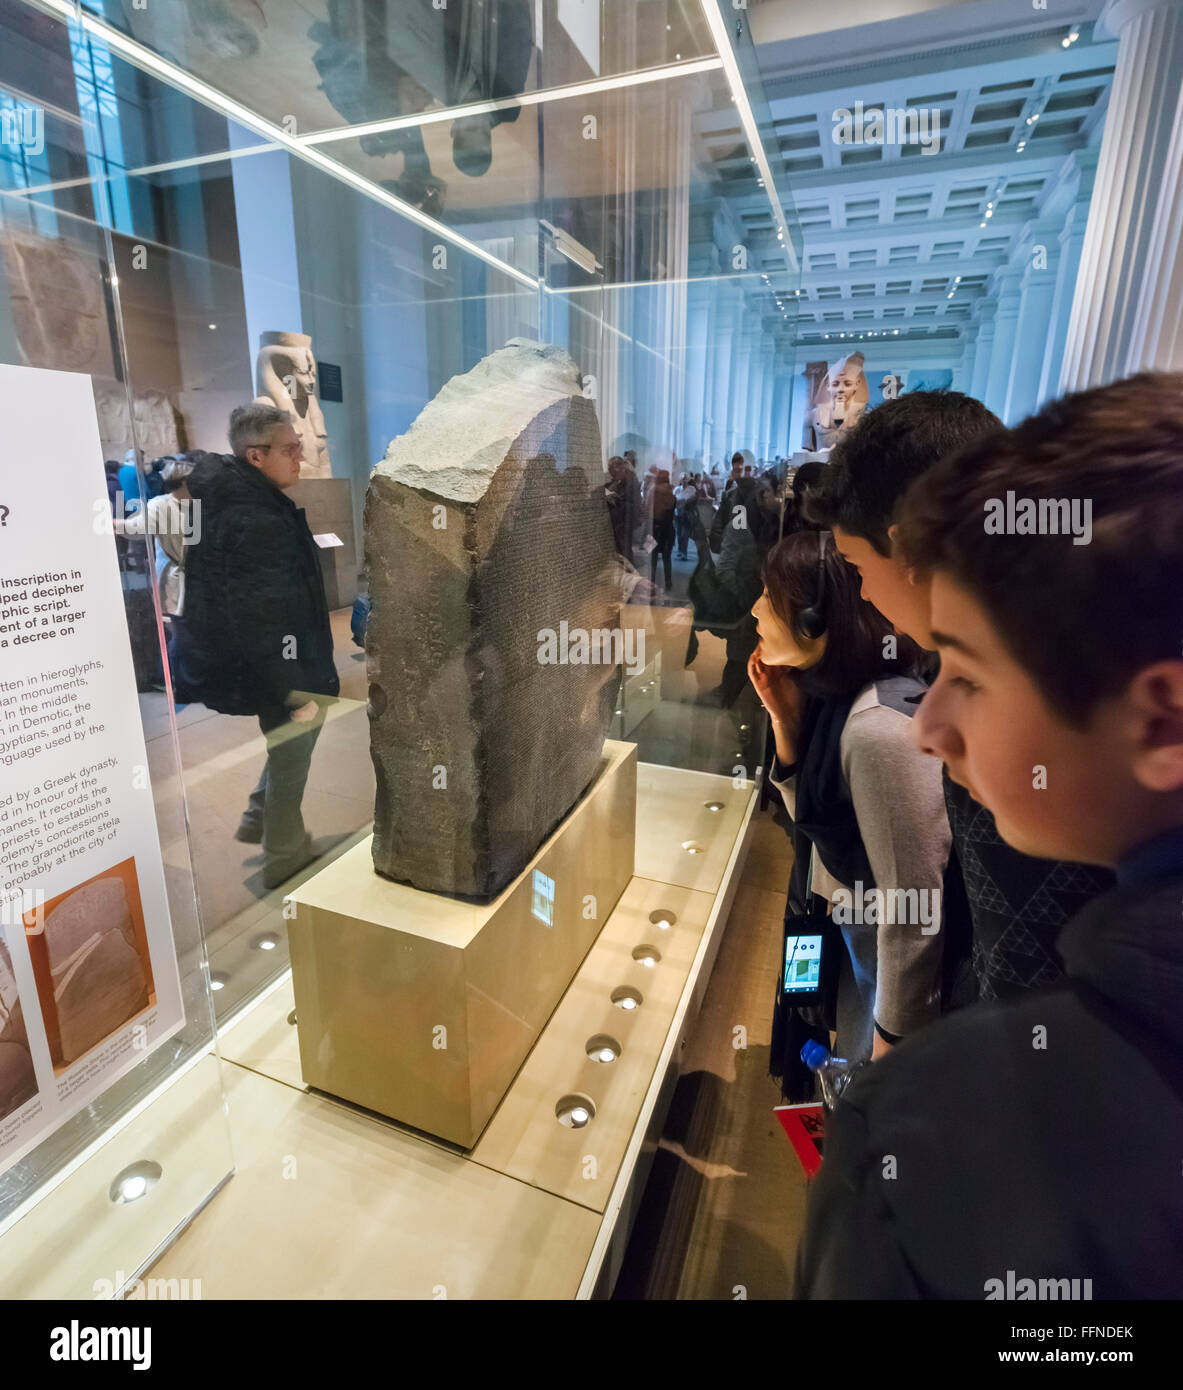 Les visiteurs rassemblés autour de la pierre de Rosette dans l'Egypte ancienne galerie sculpture égyptienne, British Museum, Londres, Angleterre, Royaume-Uni Banque D'Images